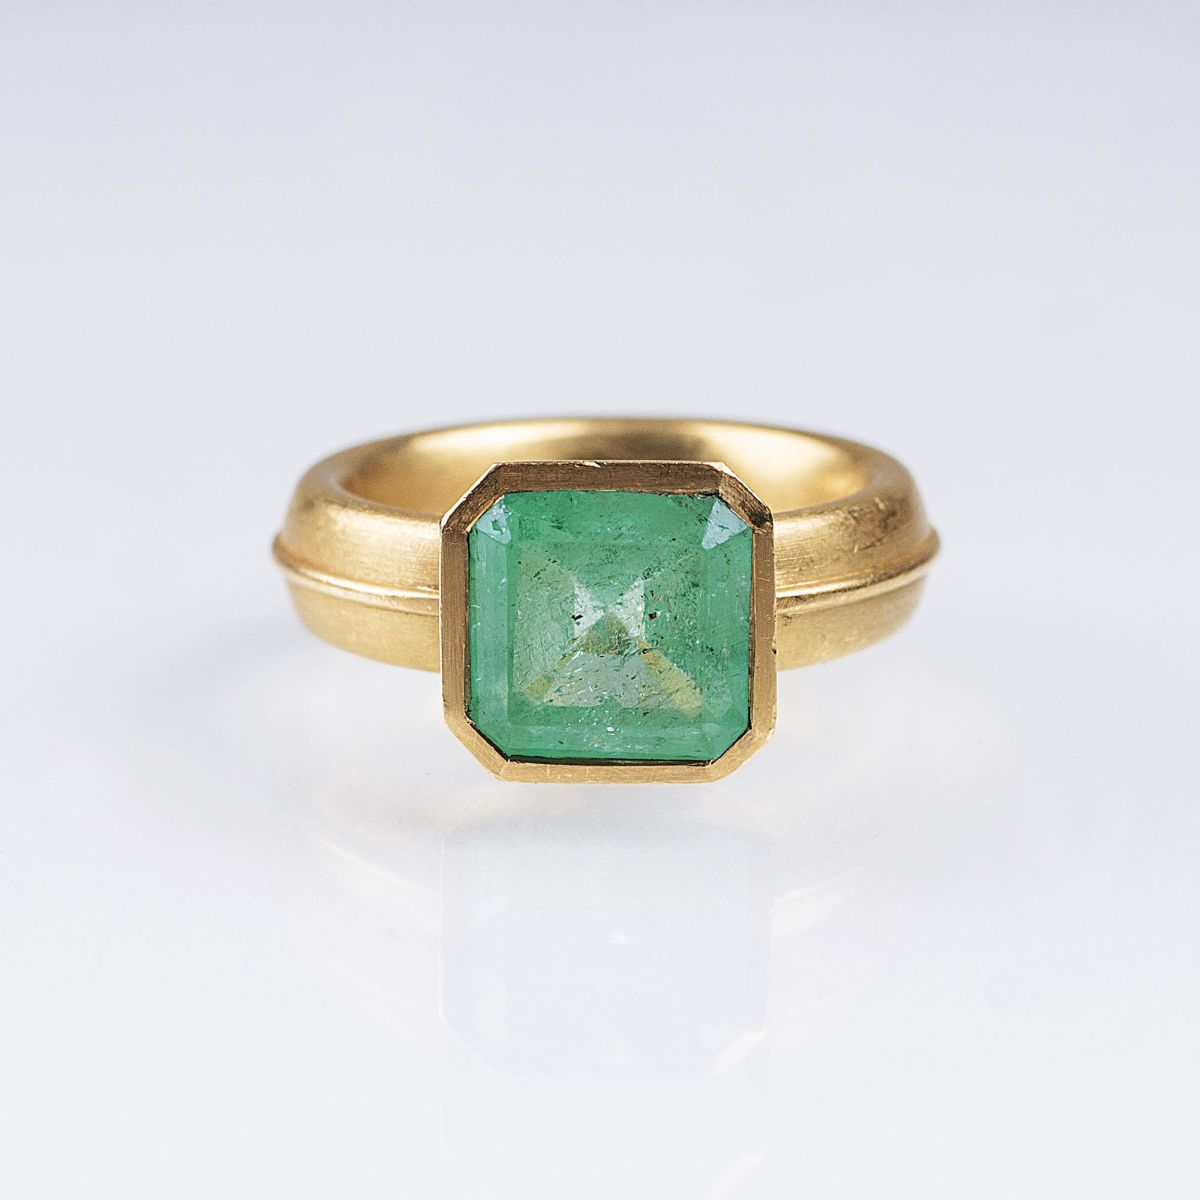 Smaragd-Ring von Juwelier Panzerknacker